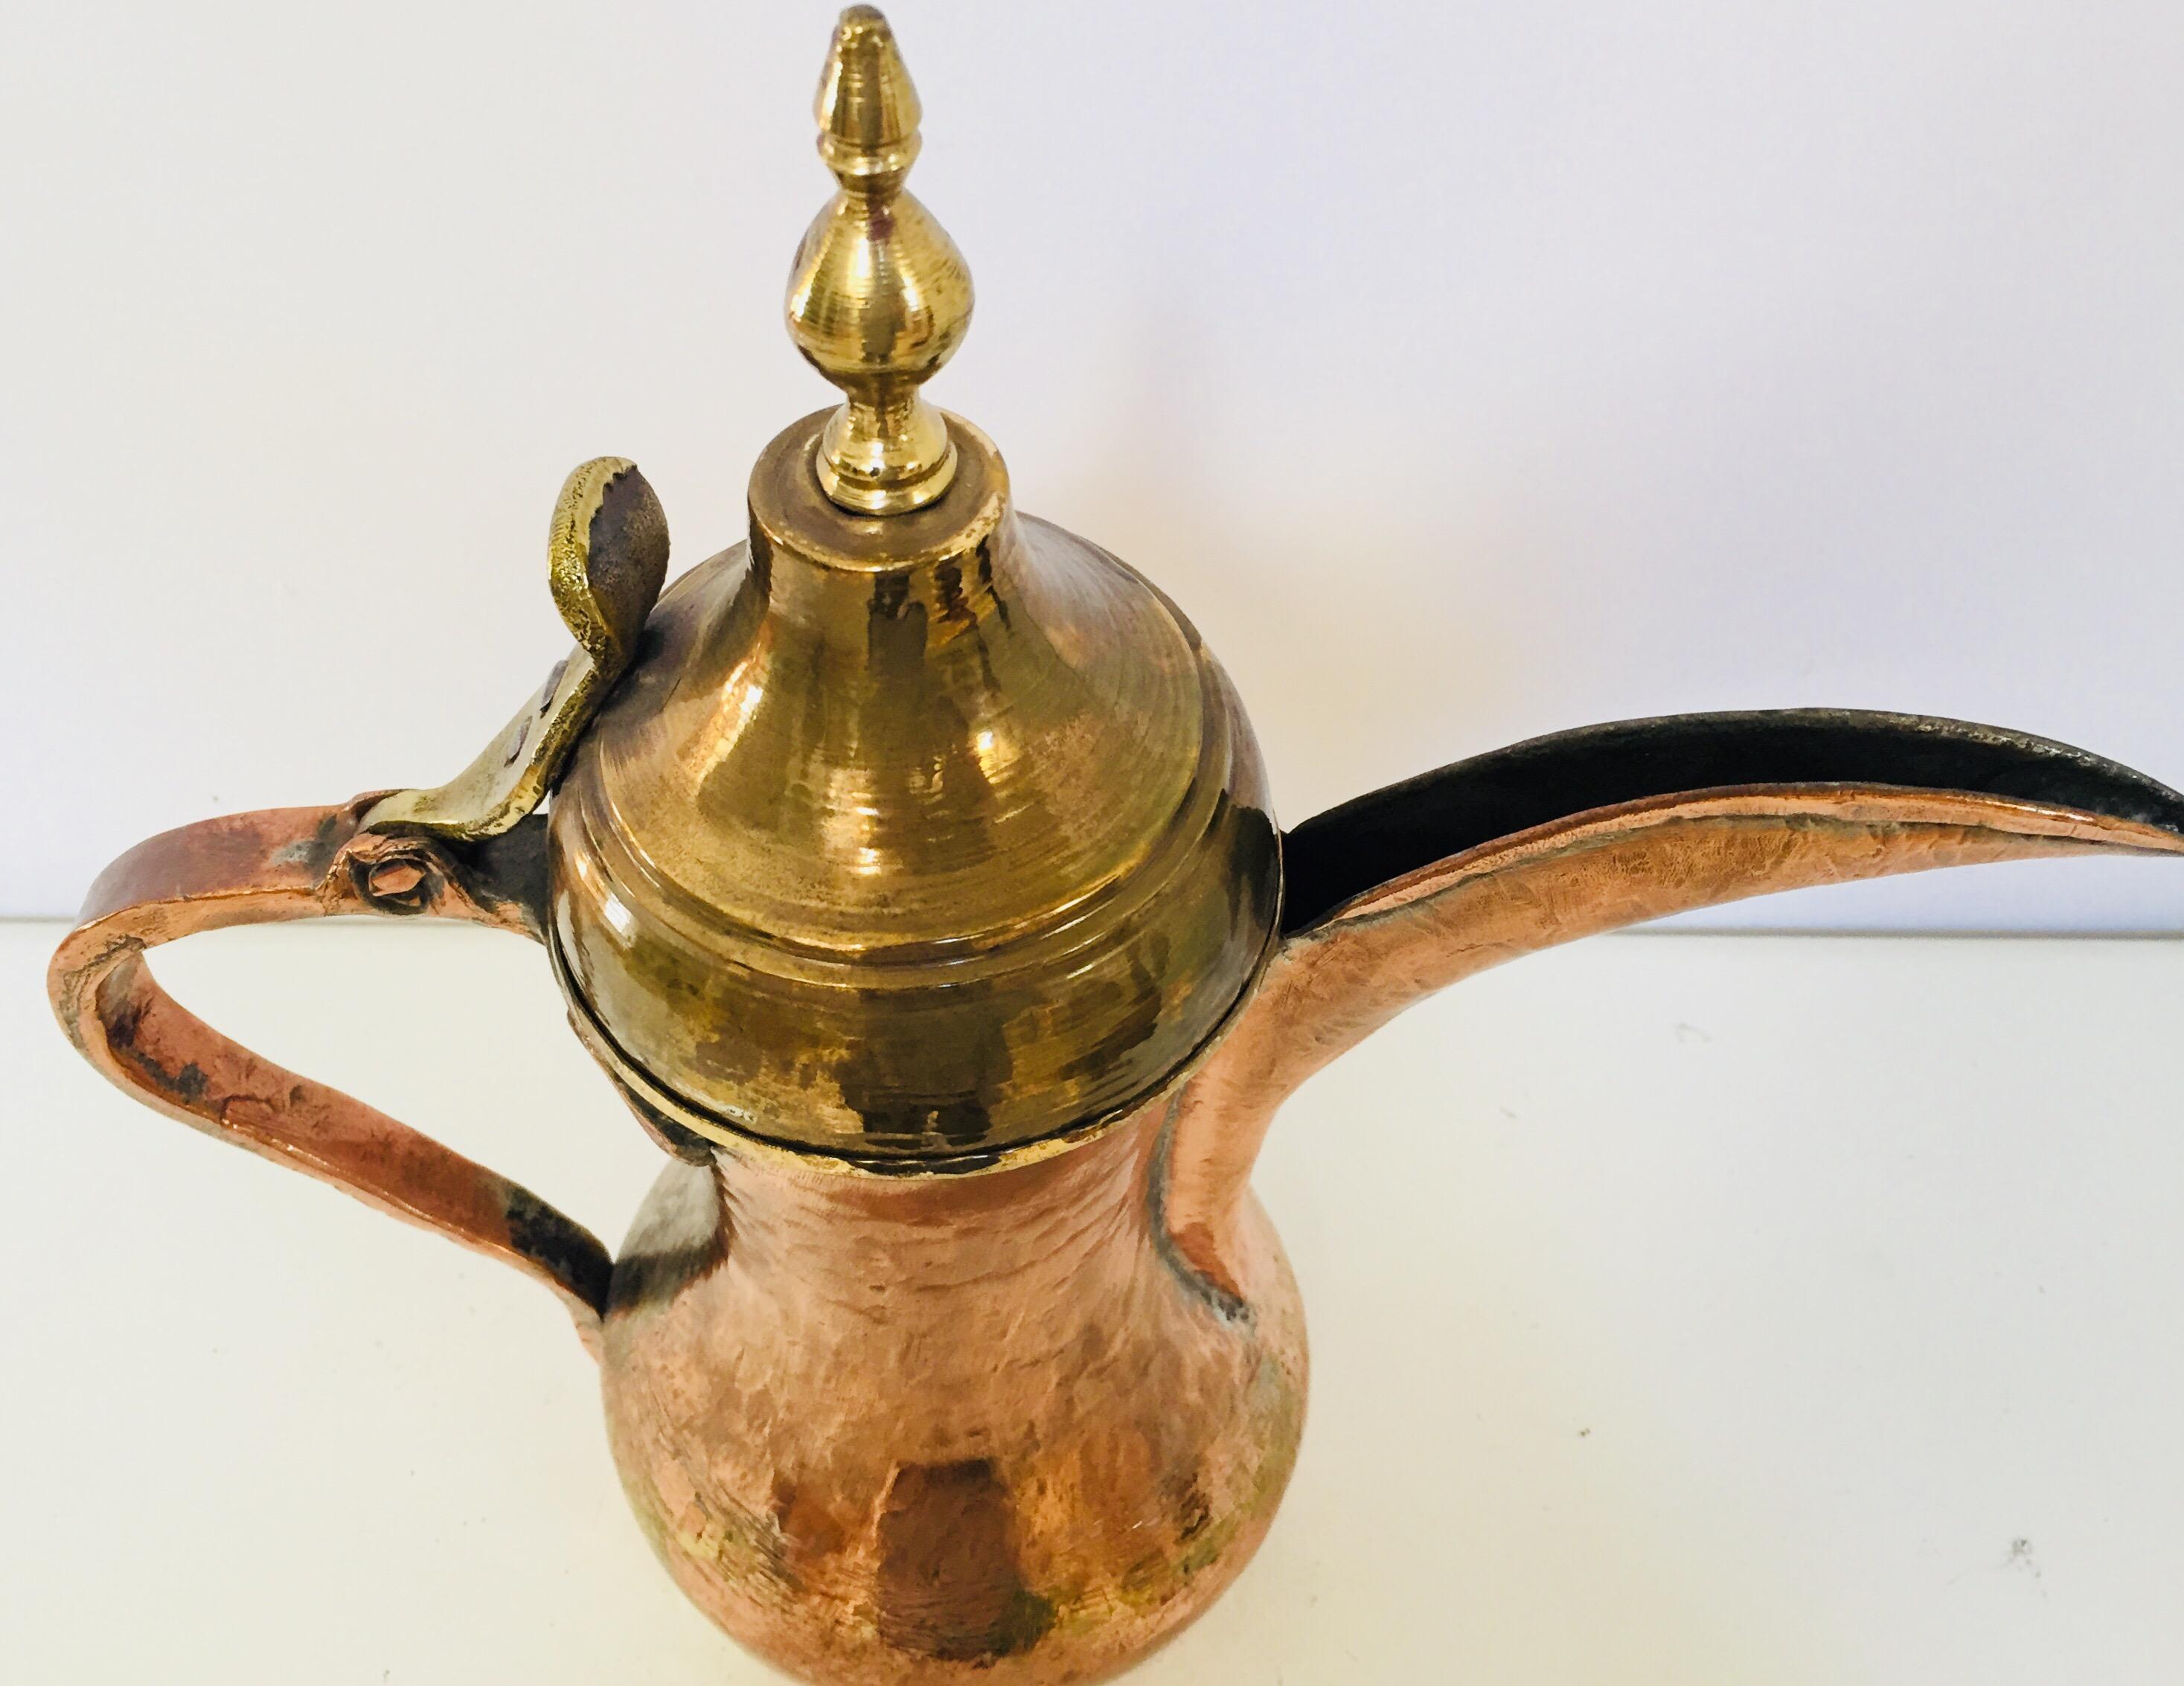 arabische Dallah-Kaffeekanne aus dem 19. Jahrhundert aus verzinntem Kupfer.
Antike dekorative arabische Kaffeekanne aus handgehämmertem und ziseliertem Kupfer mit vernieteter Messingoberfläche.
Wahrscheinlich aus Oman. Maurisches Stammesmuster auf